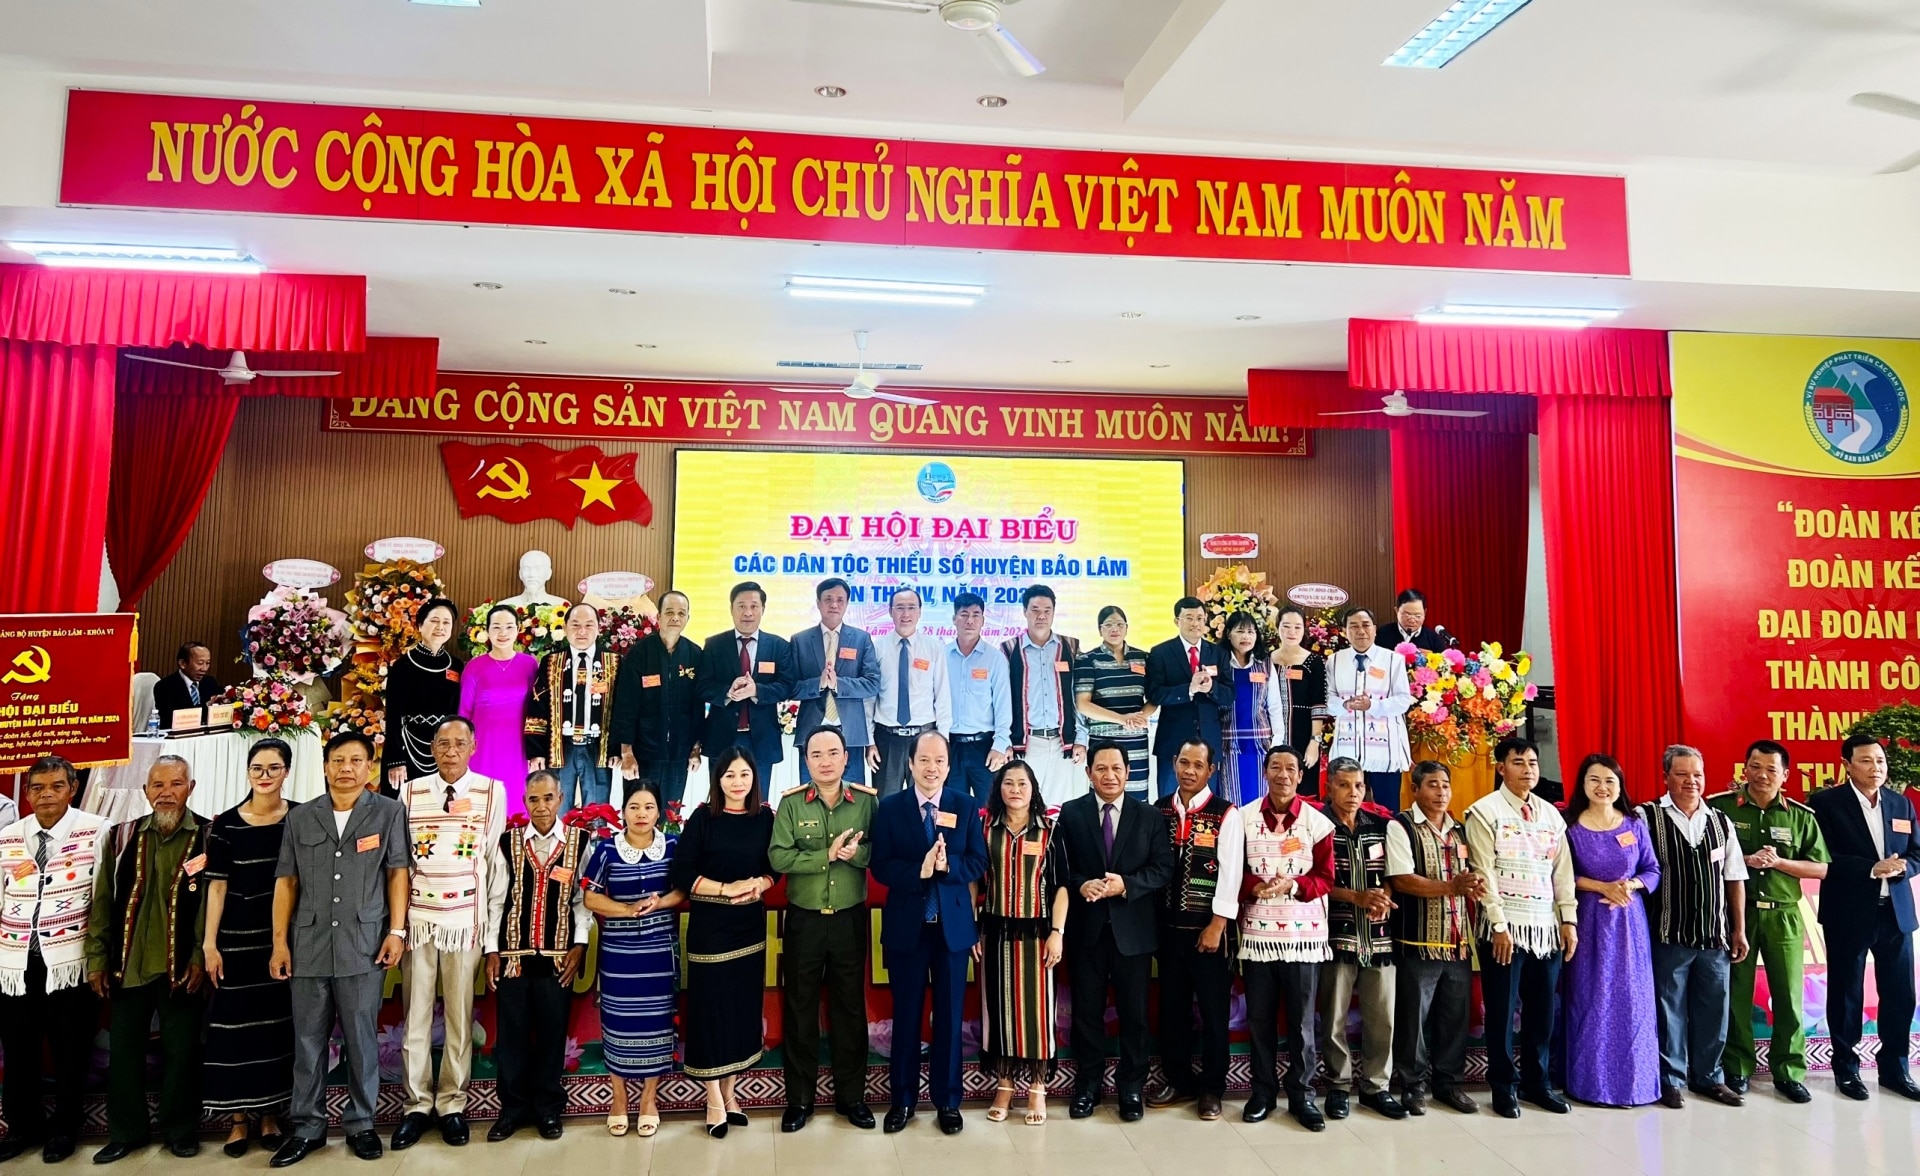 Đoàn đại biểu huyện Bảo Lâm dự Đại hội Đại biểu DTTS tỉnh Lâm Đồng ra mắt Đại hội